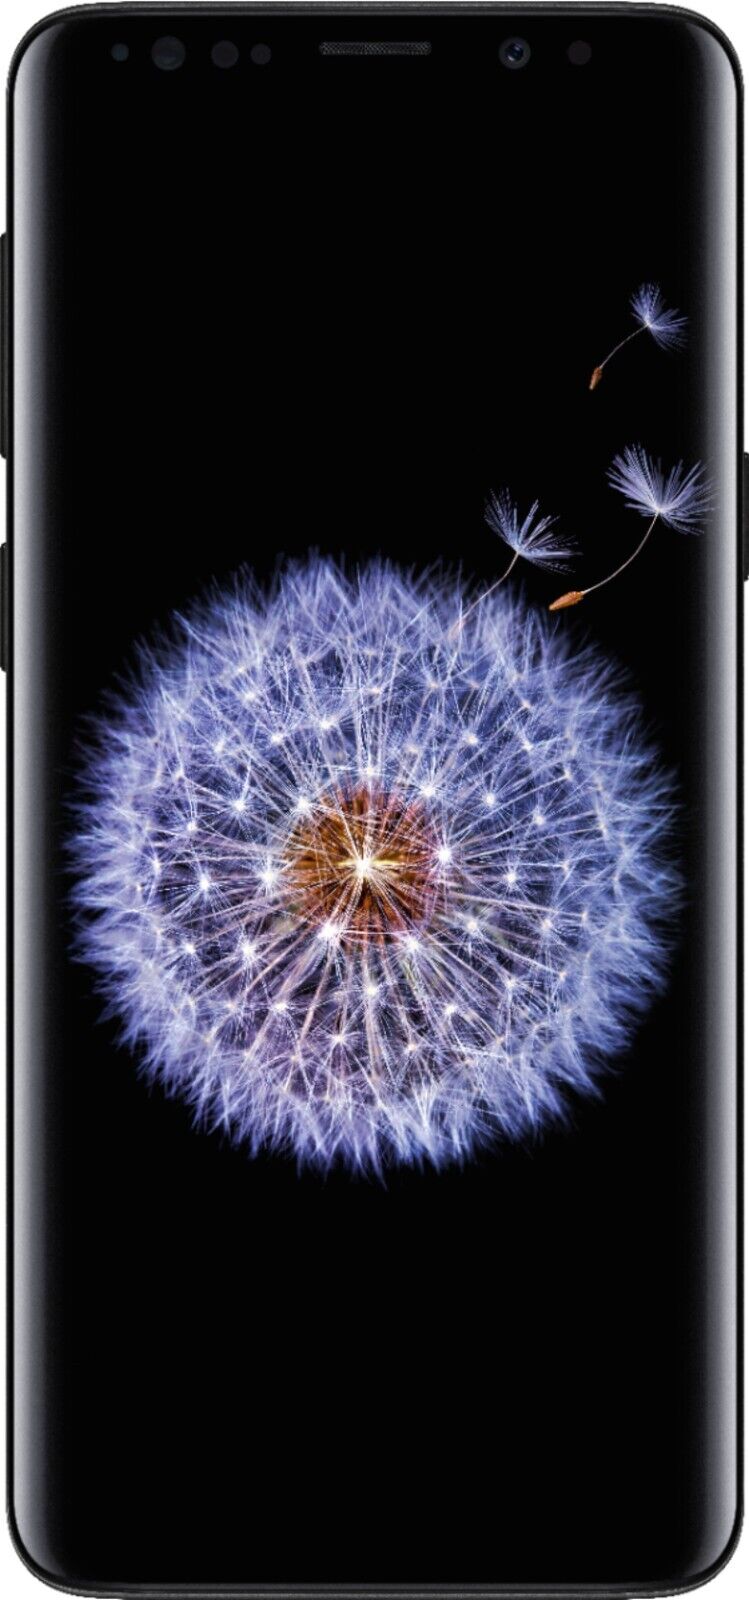 Galaxy S9 64GB - Midnight Black - Locked AT&T